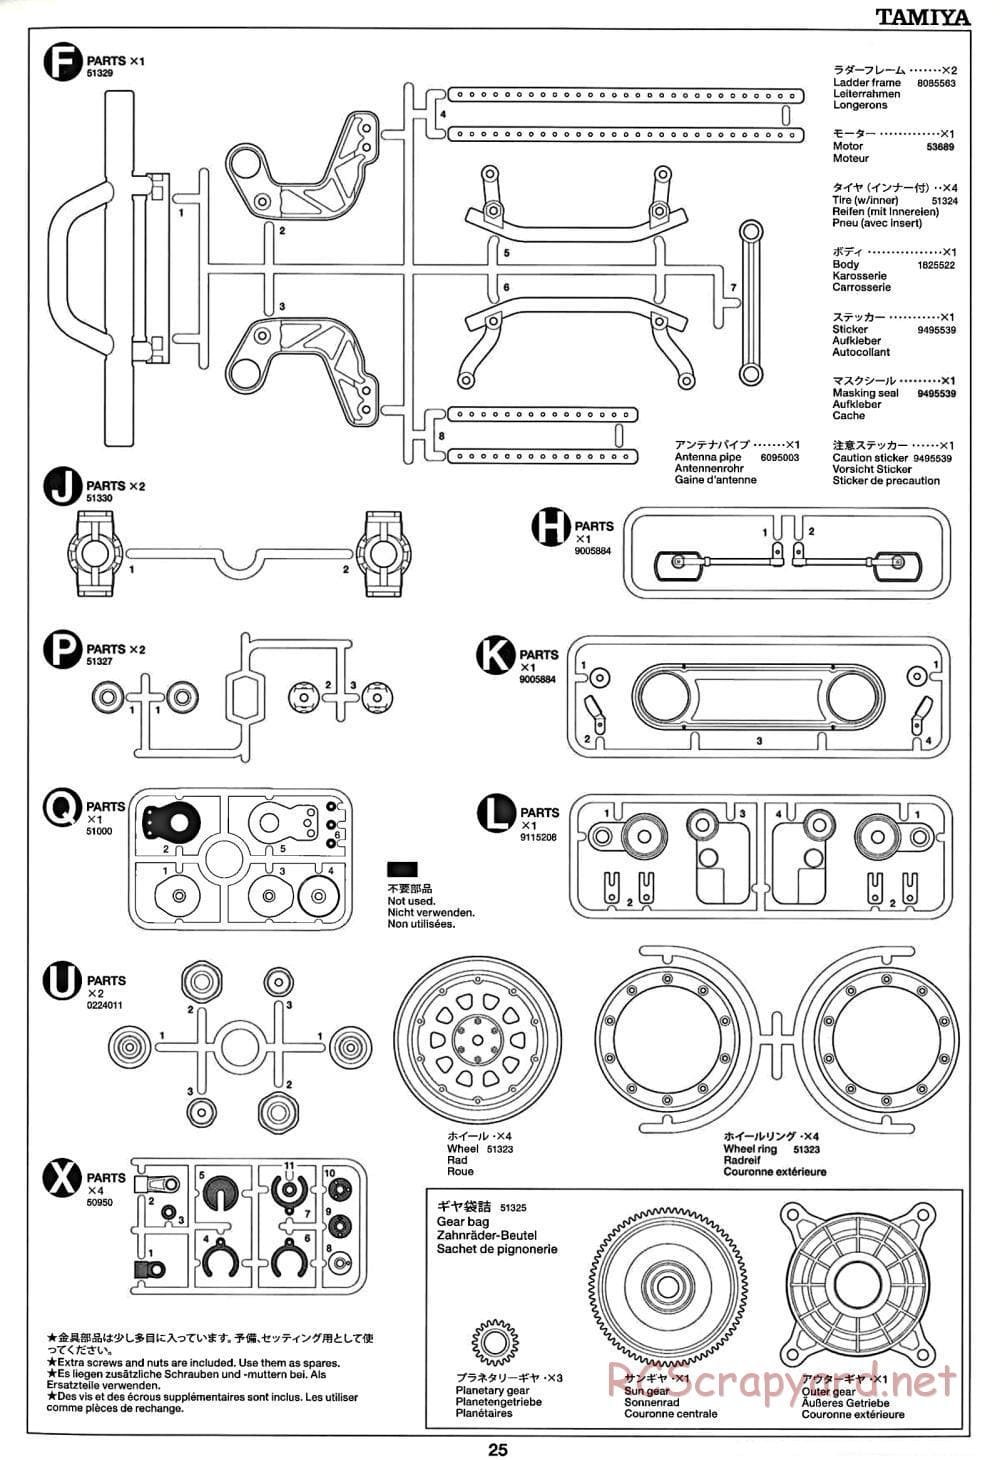 Tamiya - CR-01 Chassis - Manual - Page 25